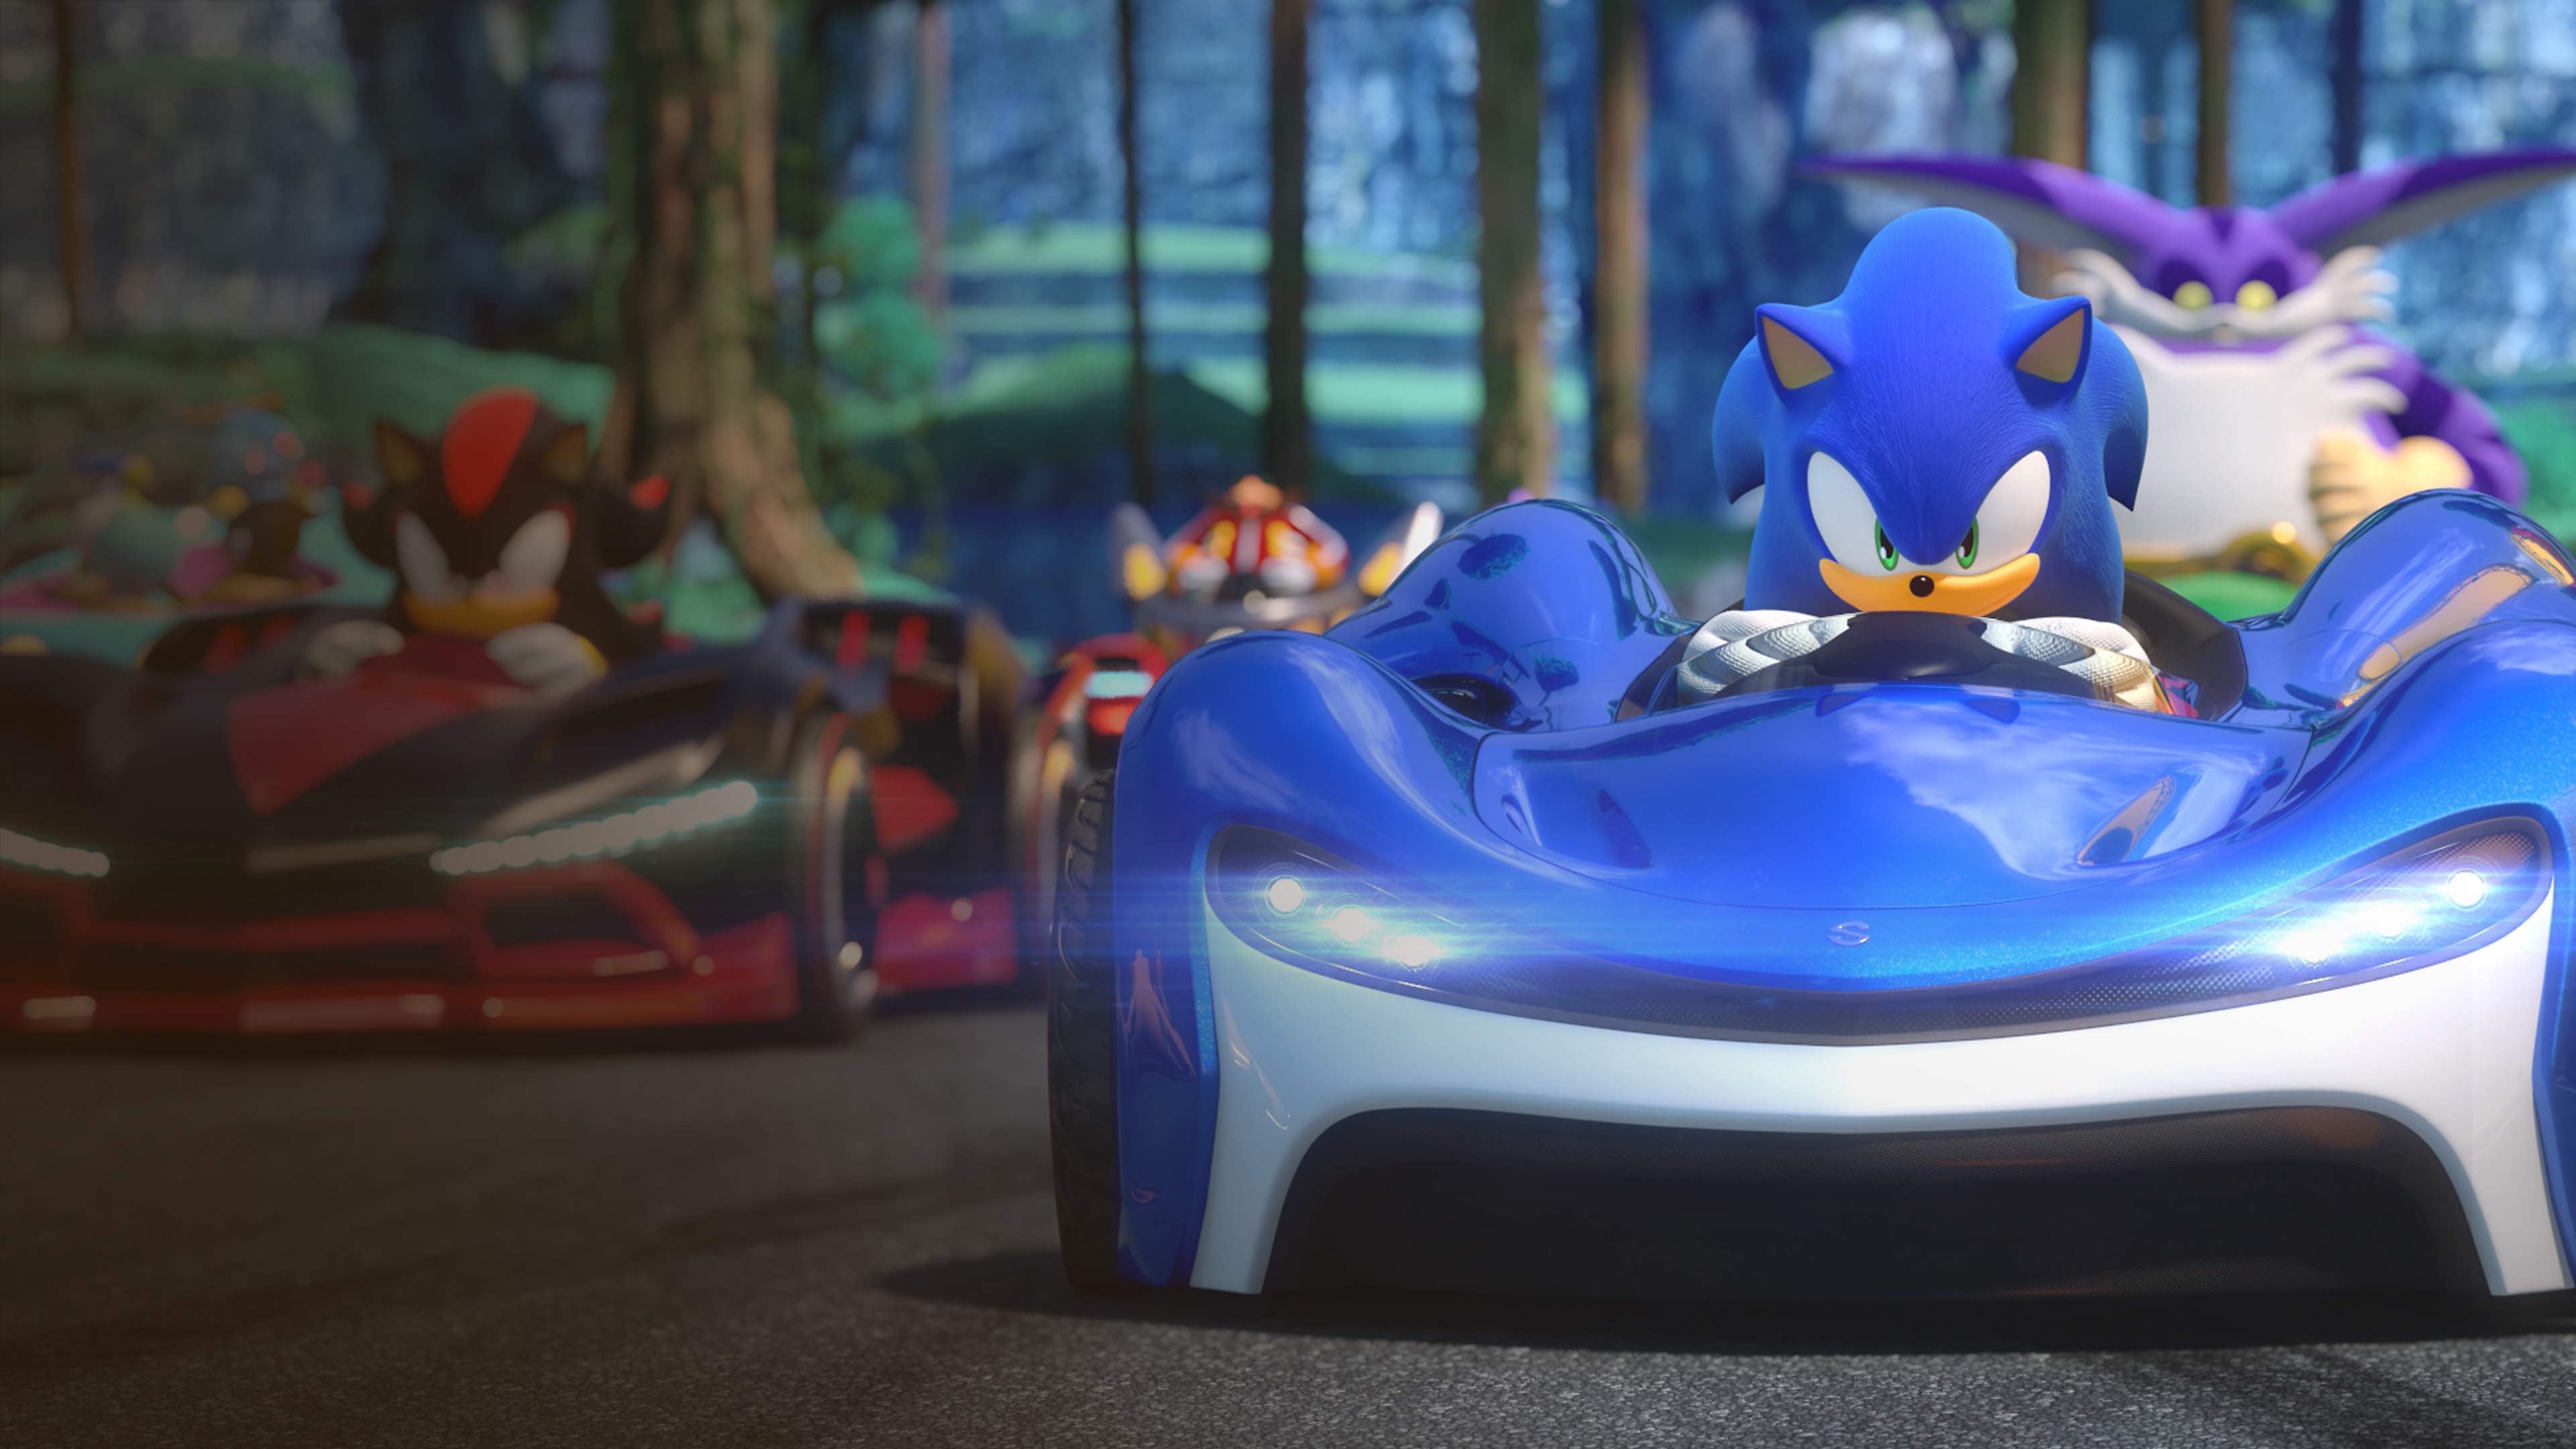 Team Sonic Racing – kuvakaappaus, jossa Sonic valmistautuu kilpailuun